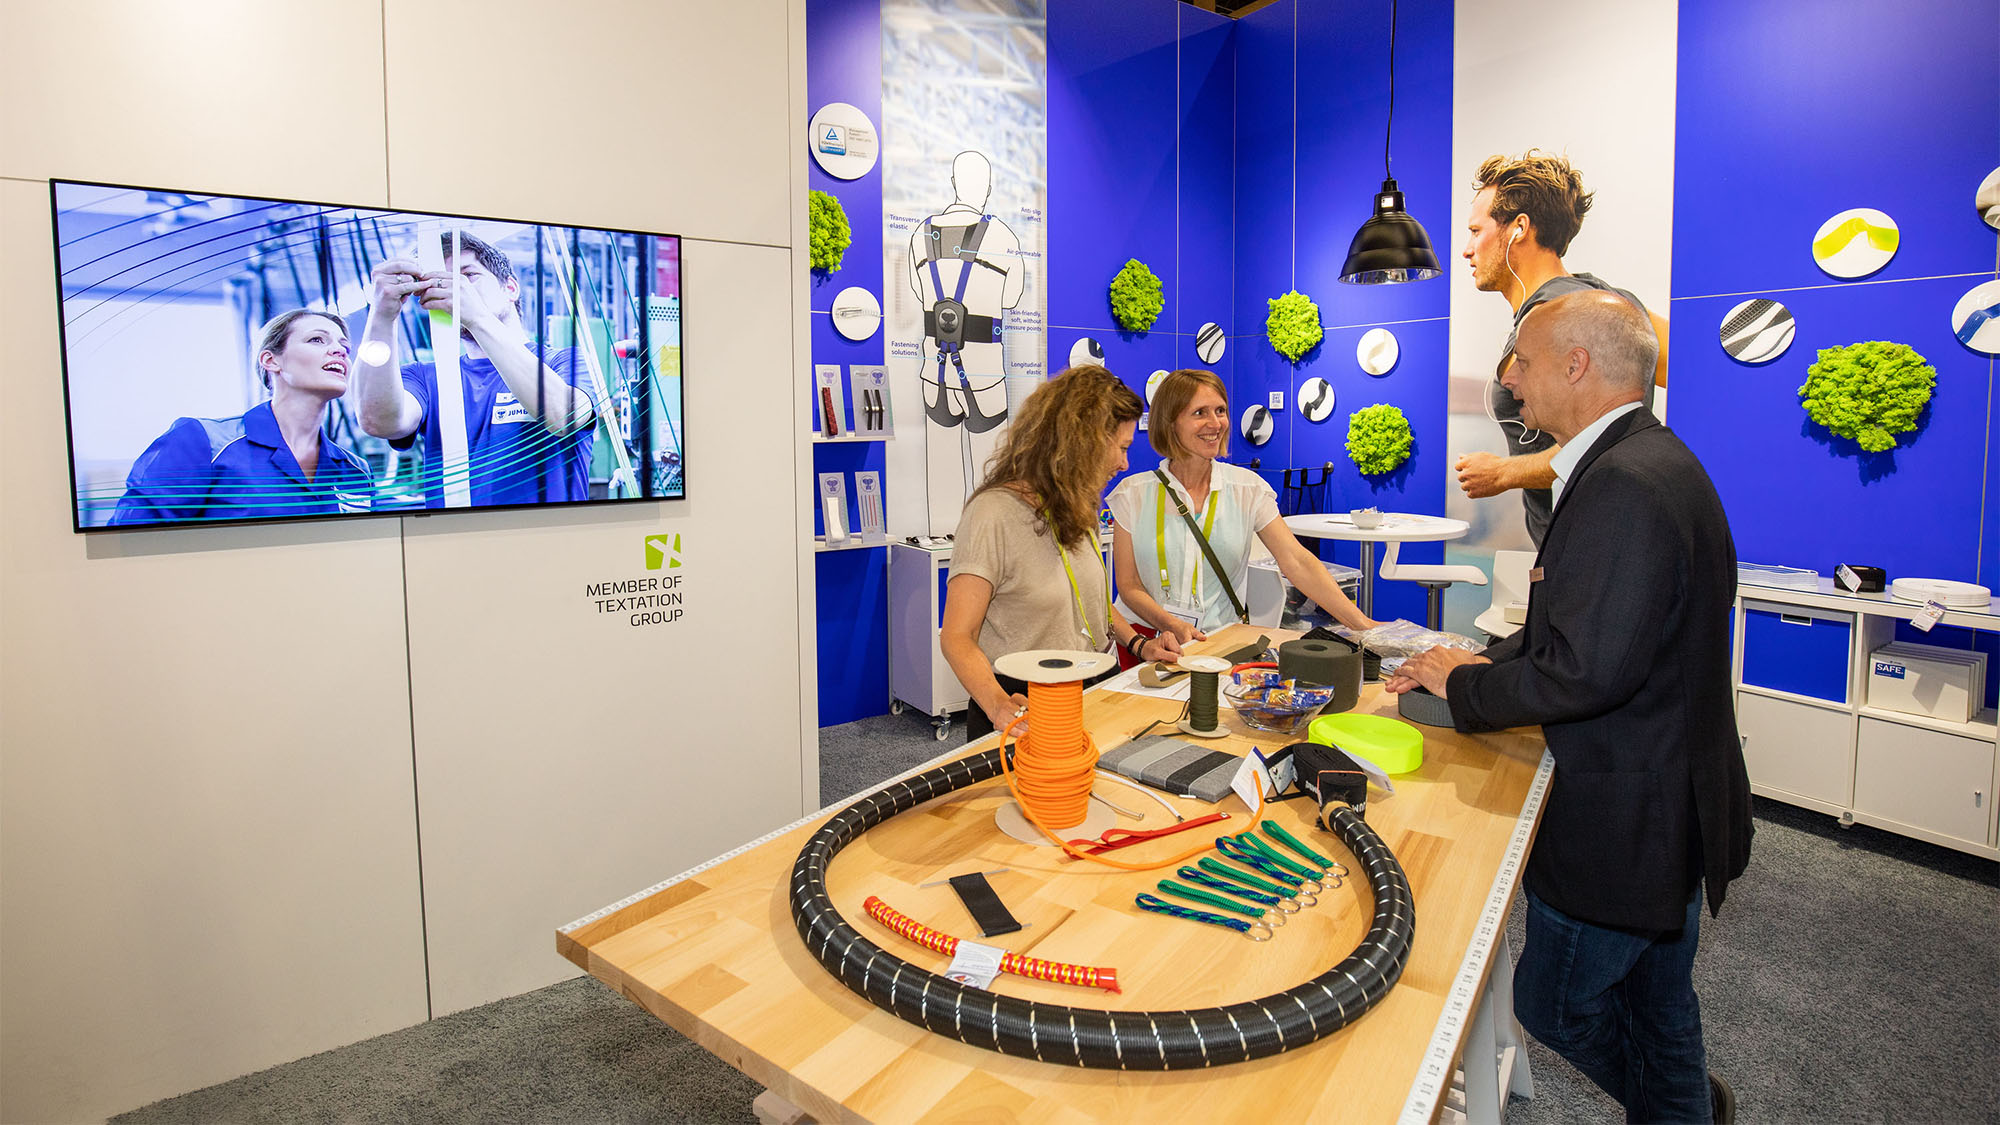 Ein Mitarbeiter von JUMBO-Textil berät zwei Frauen an einem Tisch mit verschiedenen Produktbeispielen. Links ist ein Bildschirm, auf dem gerade zwei weitere Mitarbeiter zu sehen sind (Standbild aus dem Imagevideo).